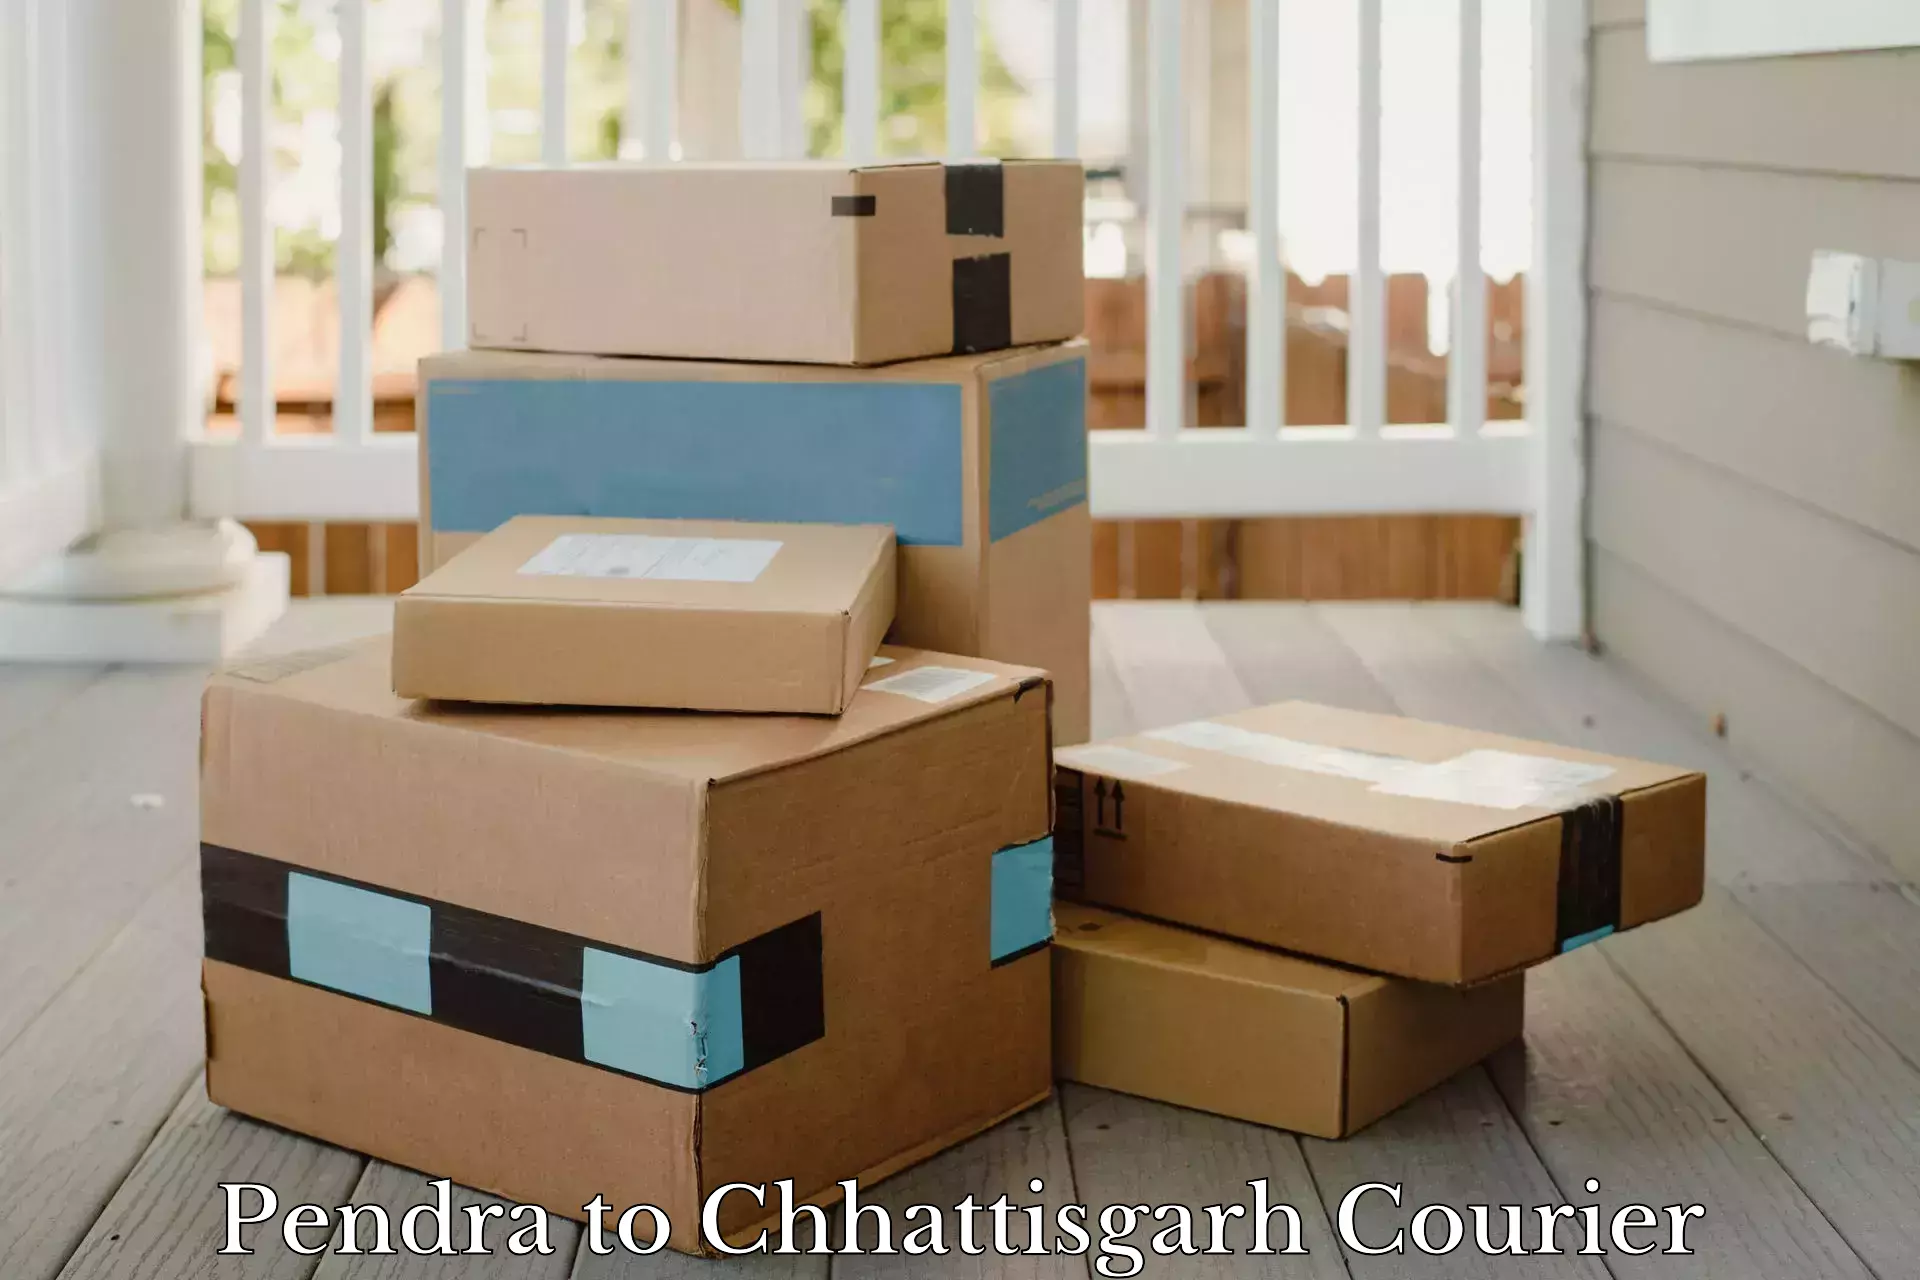 Professional courier services Pendra to Chhattisgarh